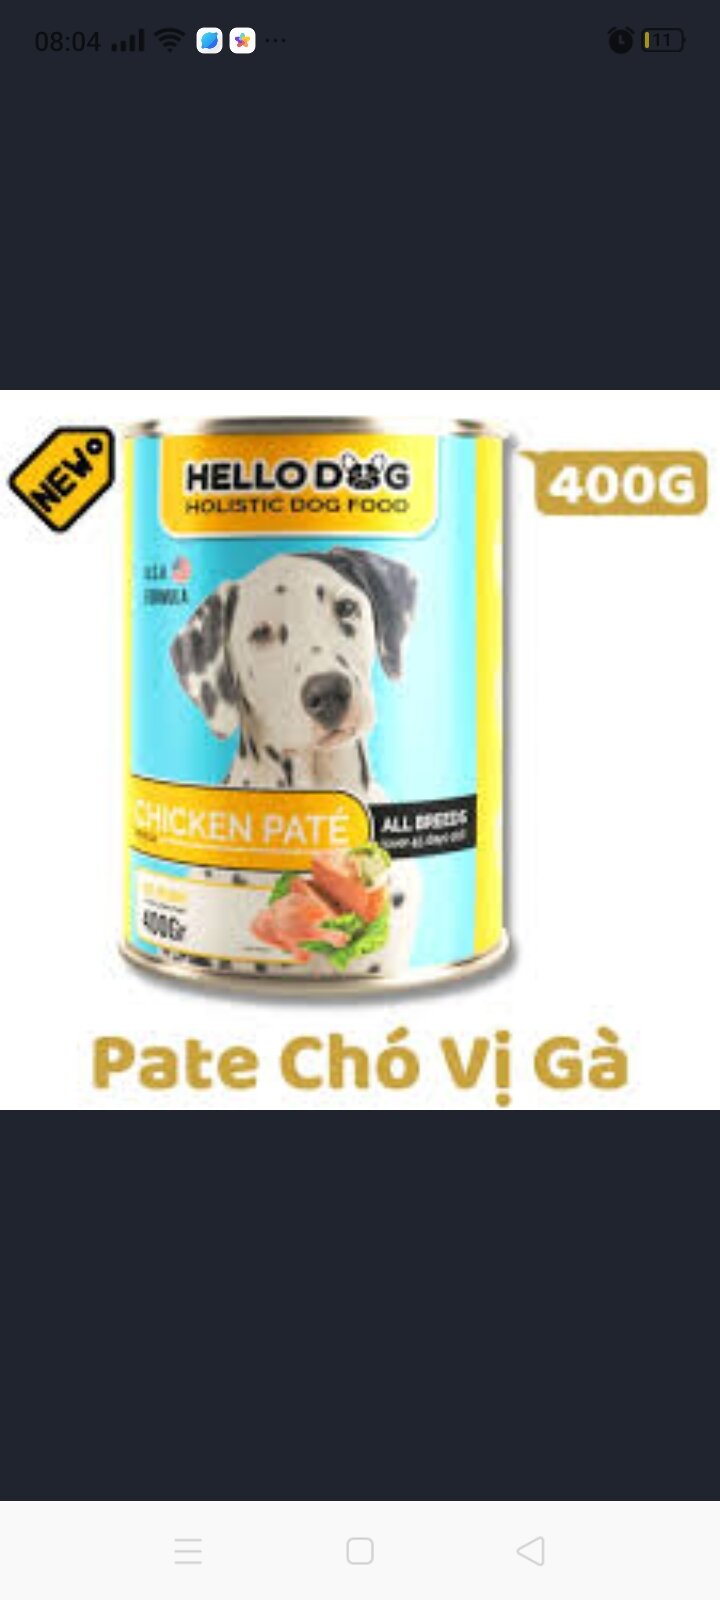 400g Pate Hello dog - Thức ăn ướt cho chó vị gà